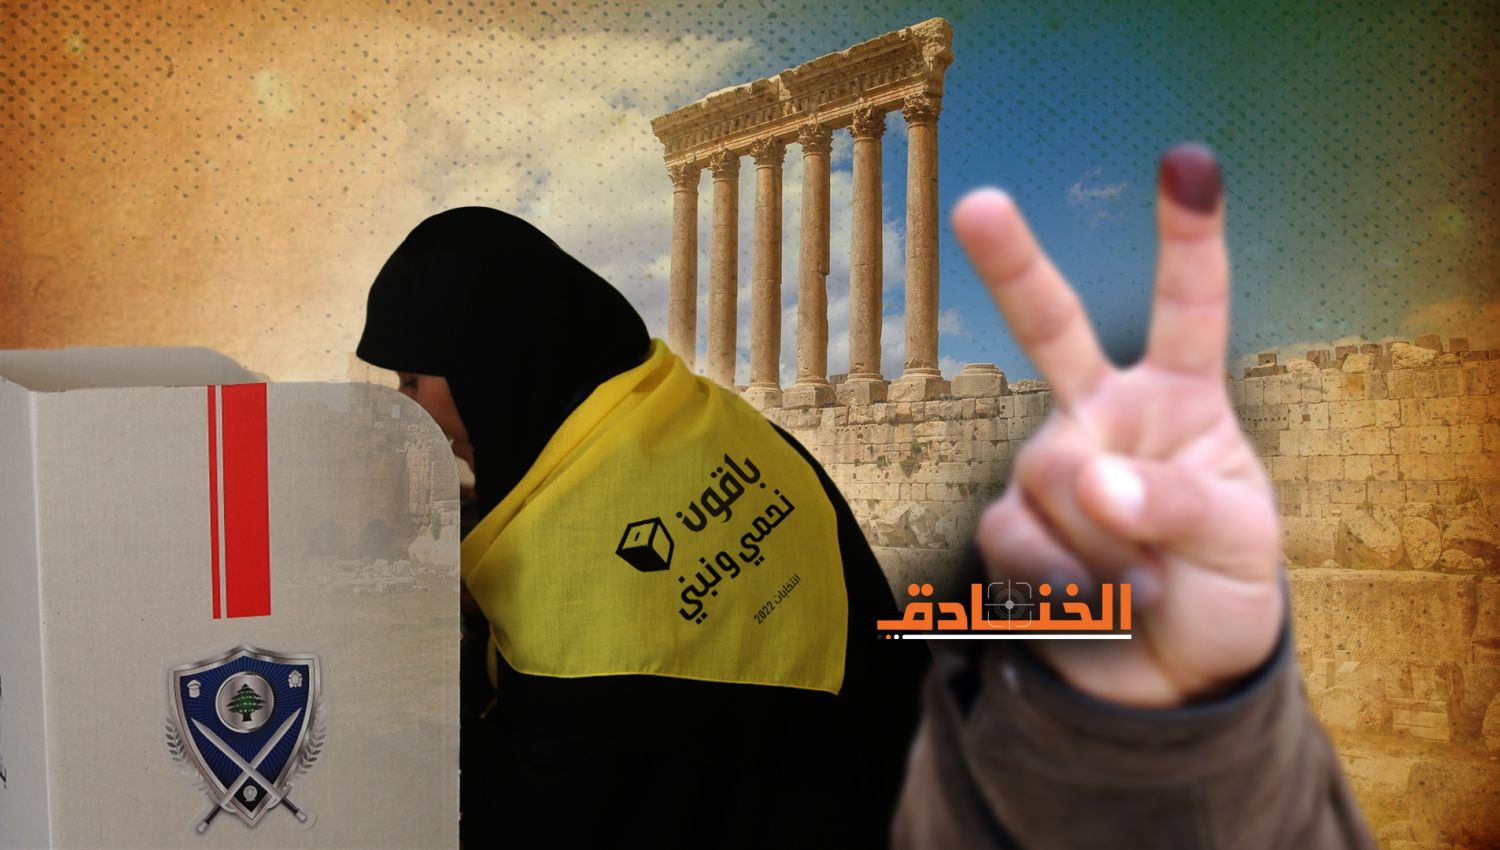  المرشح المنسحب من لائحة القوات في بعلبك الهرمل: حزب الله لم يهددنا!